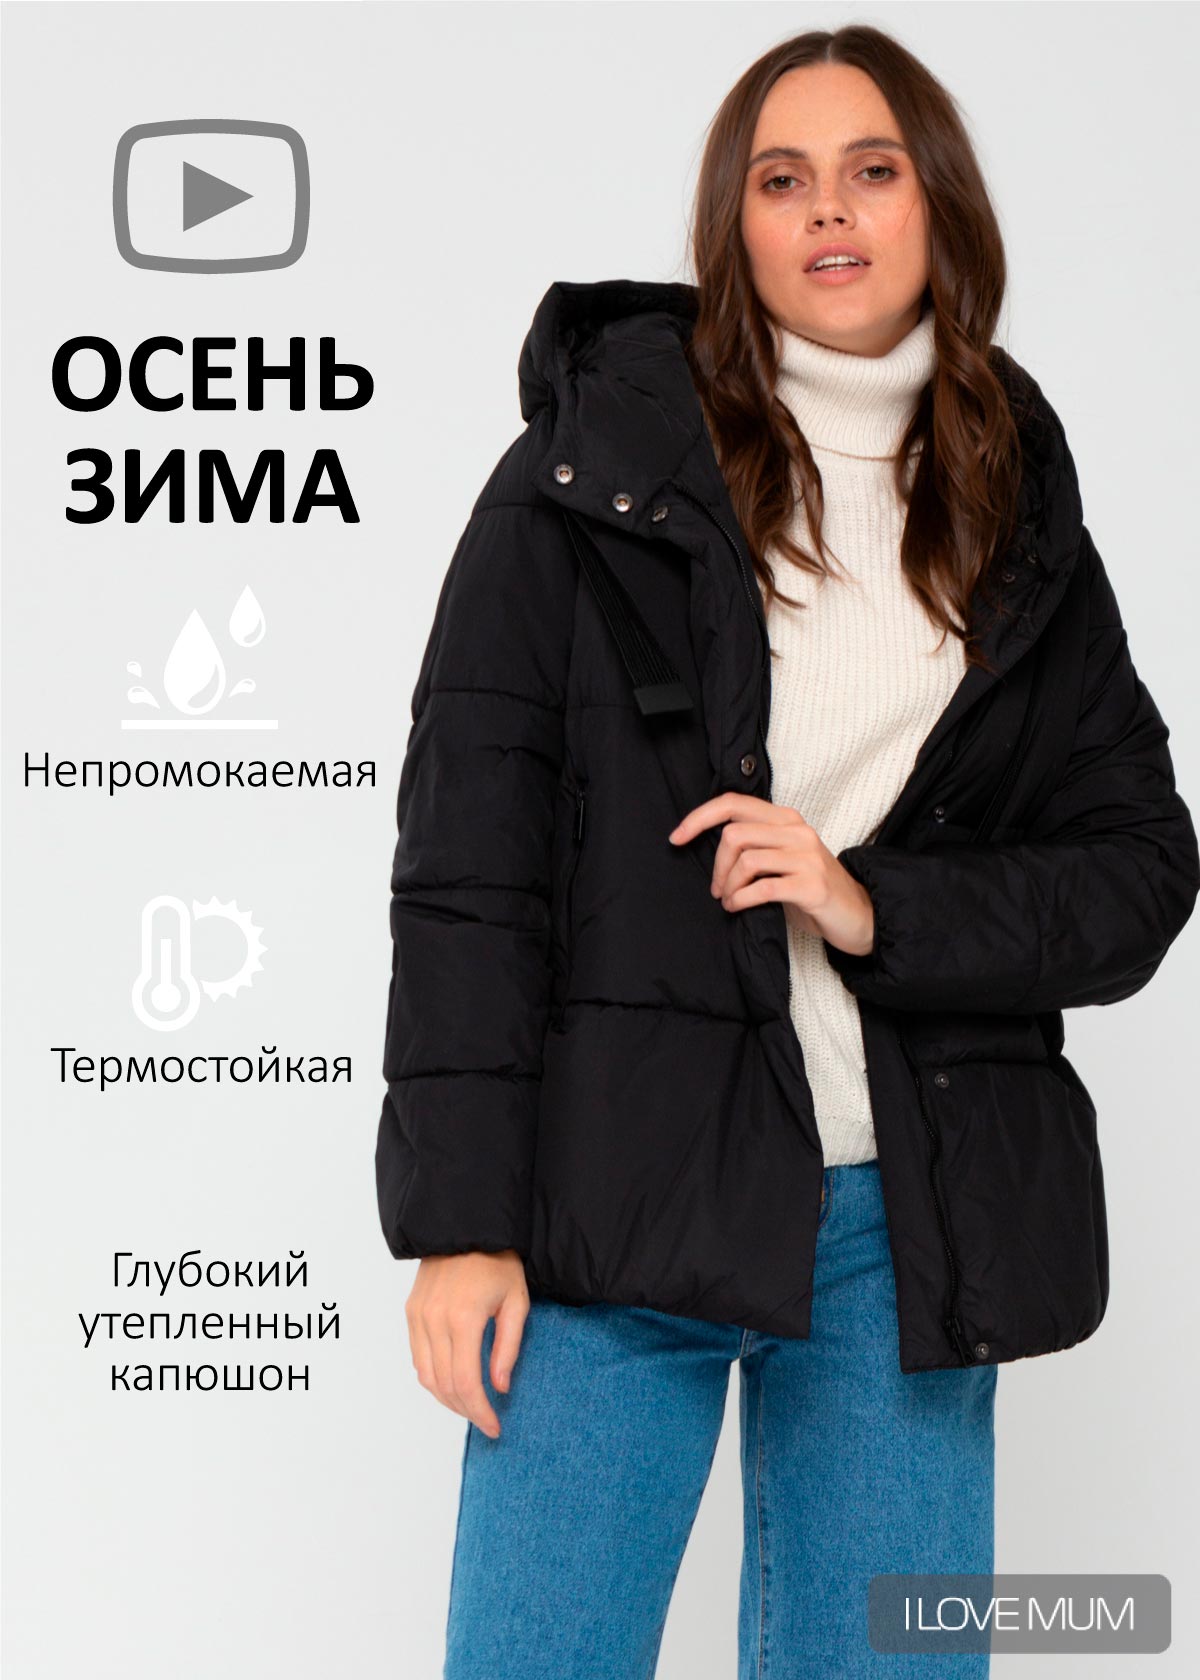 Теплые Куртки Интернет Магазин